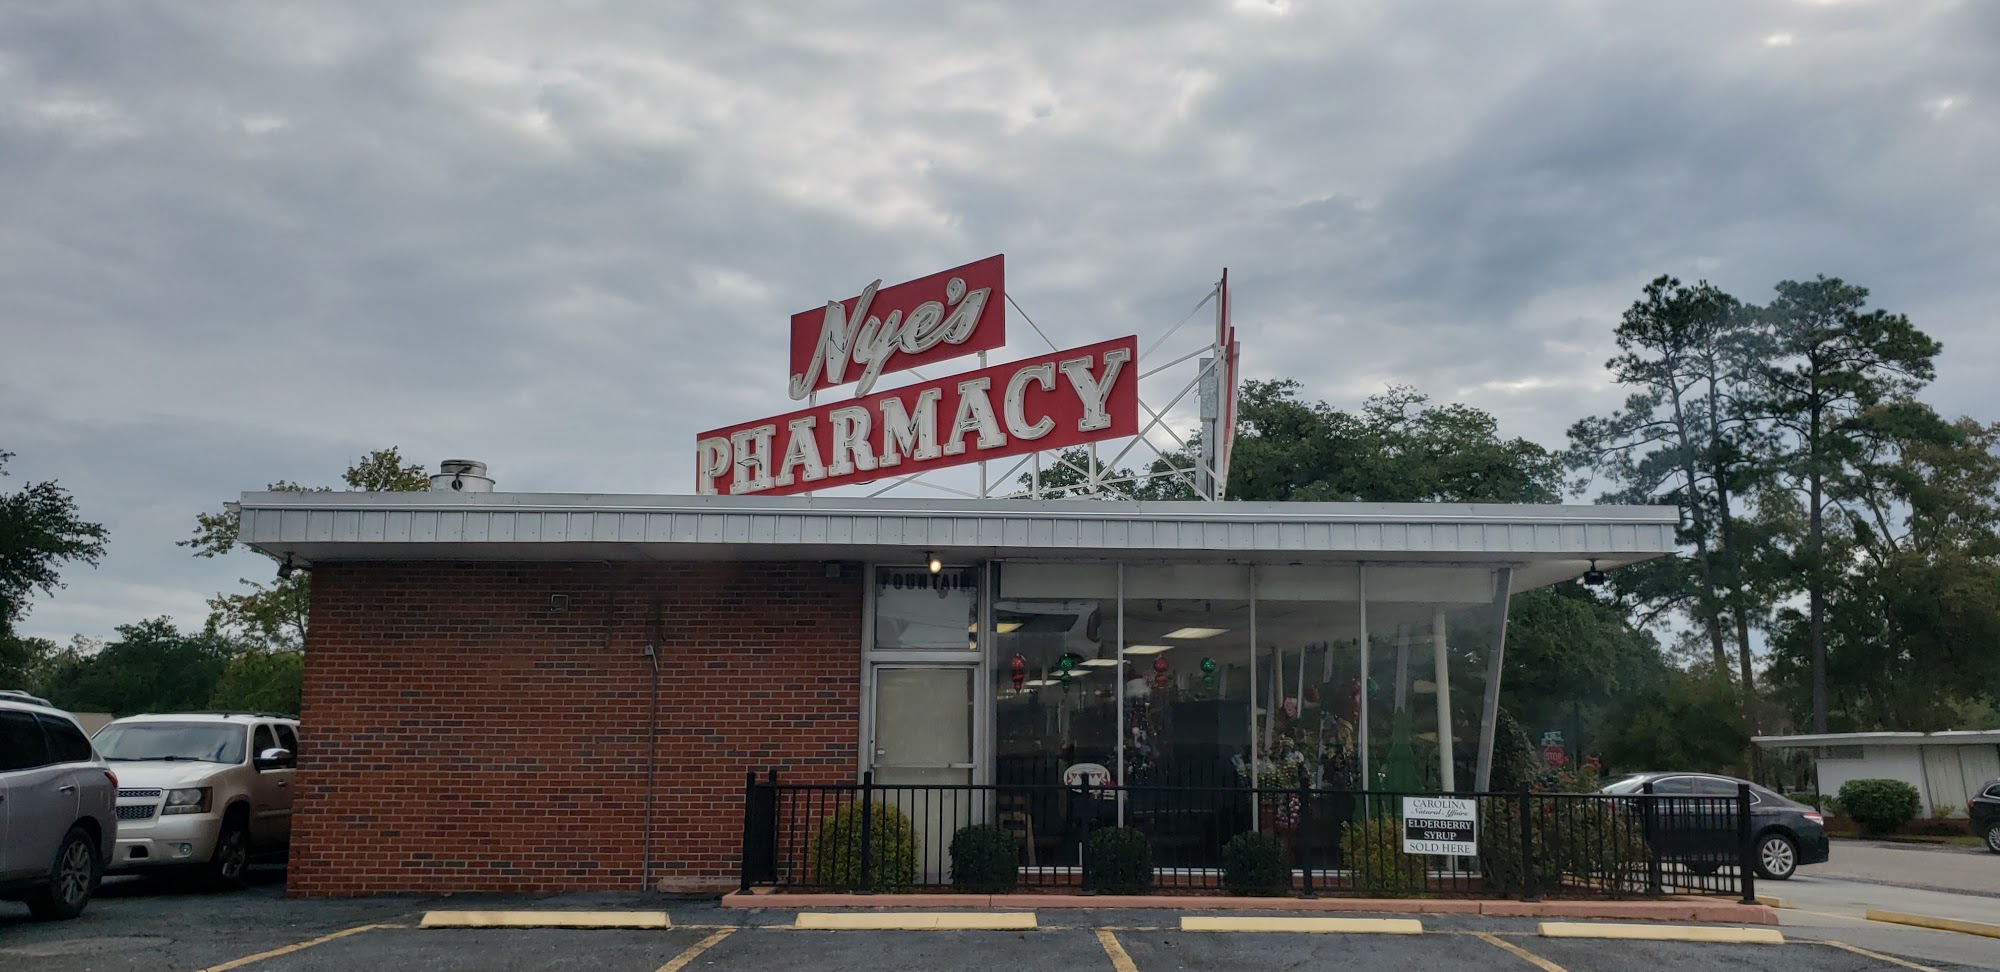 Nye's Pharmacy